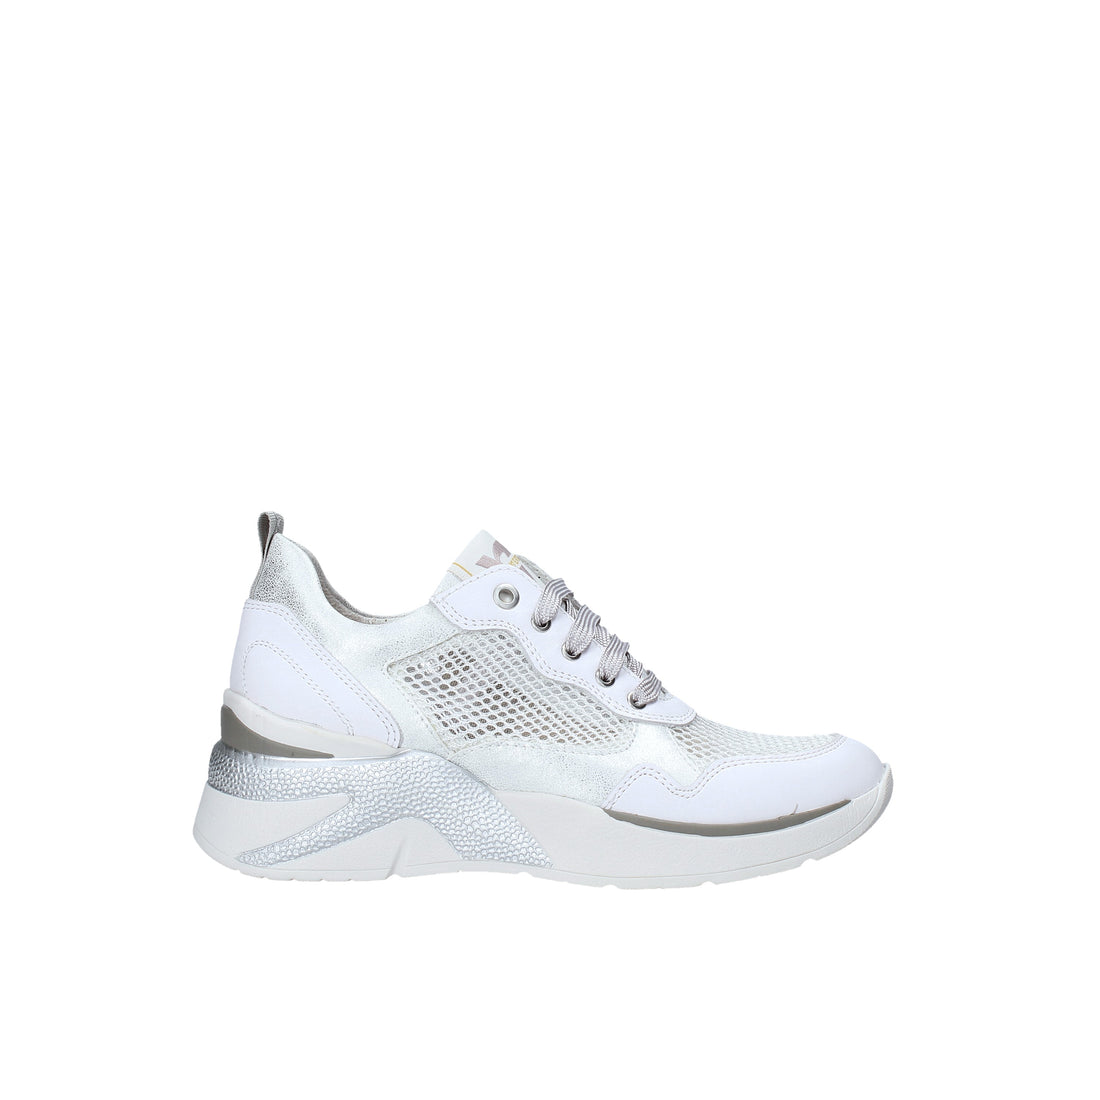 Sneakers Bianco Valleverde